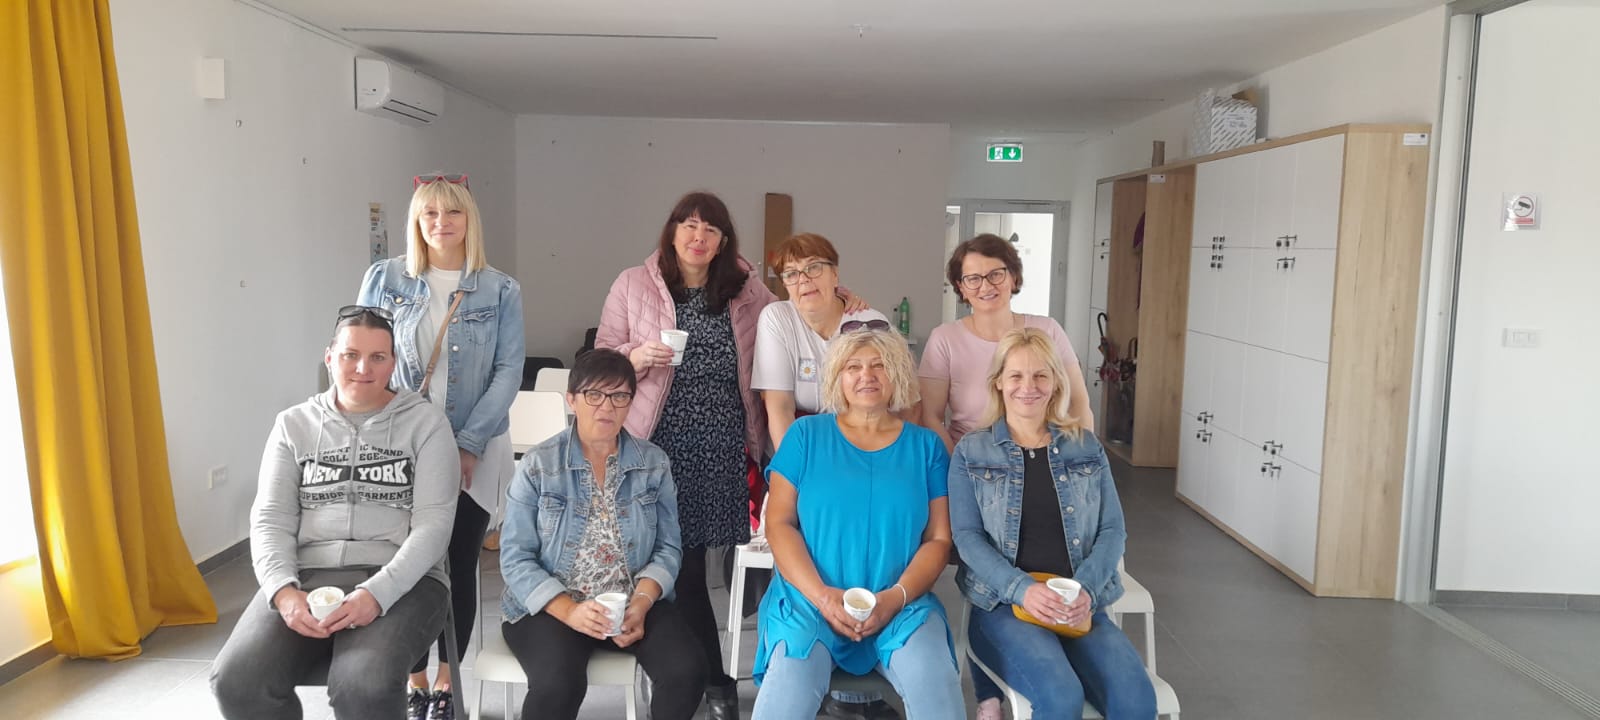 Općina Murter-Kornati uspješno privela kraju projekt „Žene pomažu za zajednicu Murter-Kornati